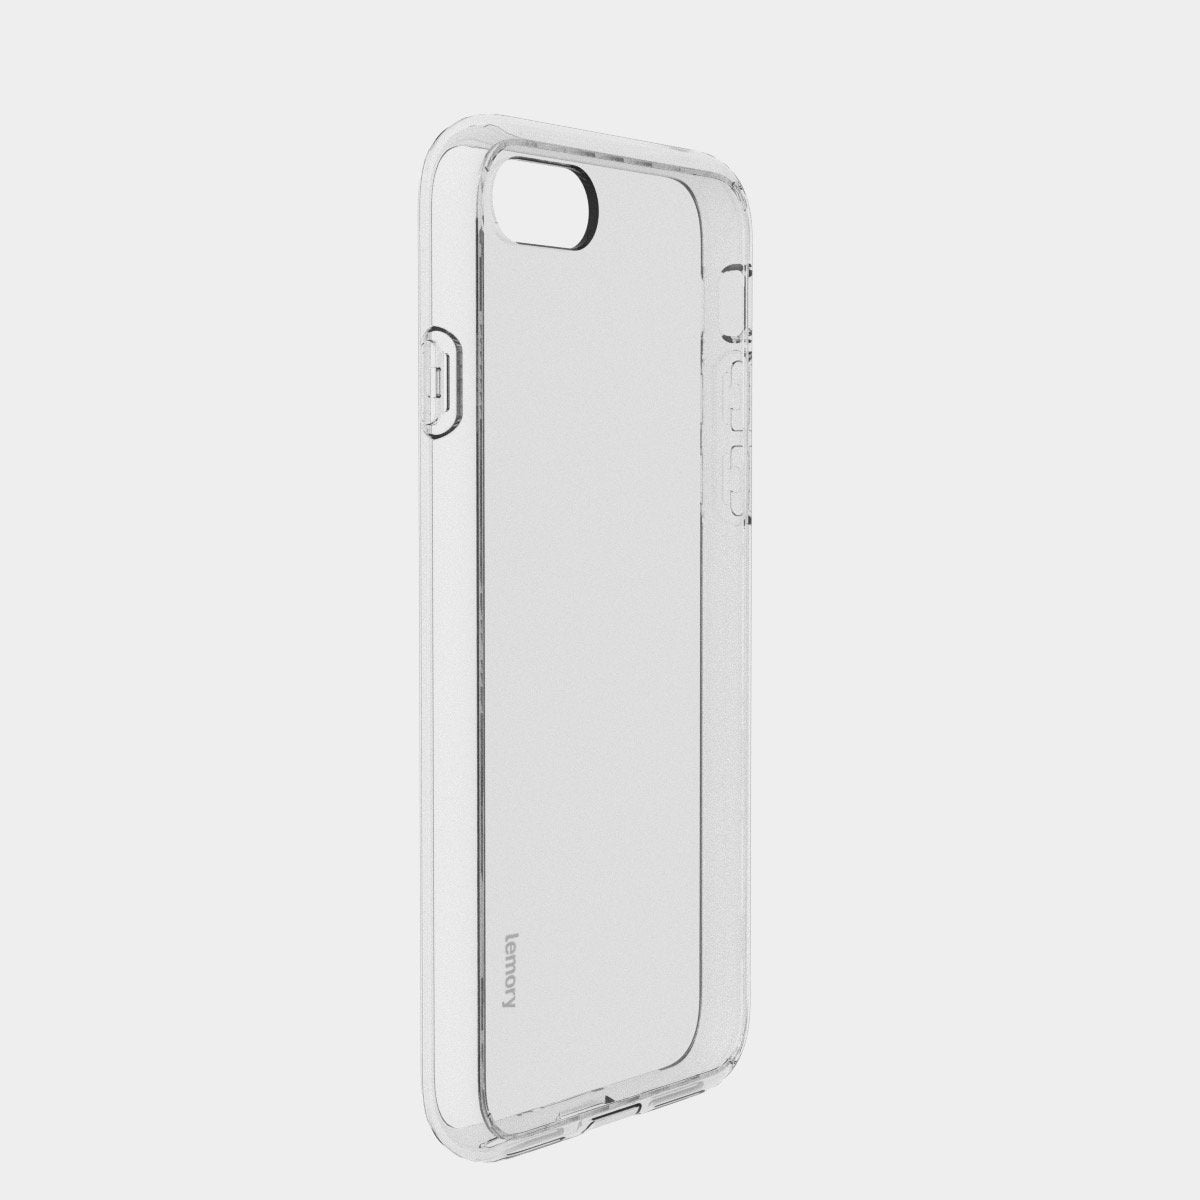 Prémiový silikonový kryt Lemory Clear na mobil Apple iPhone 7 / 8 / SE 2020 - čirý (Prémiový silikonový kryt, pouzdro, obal Lemory Clear na mobilní telefon Apple iPhone 7 / Apple iPhone 8 / Apple iPhone SE 2020 - čirý)